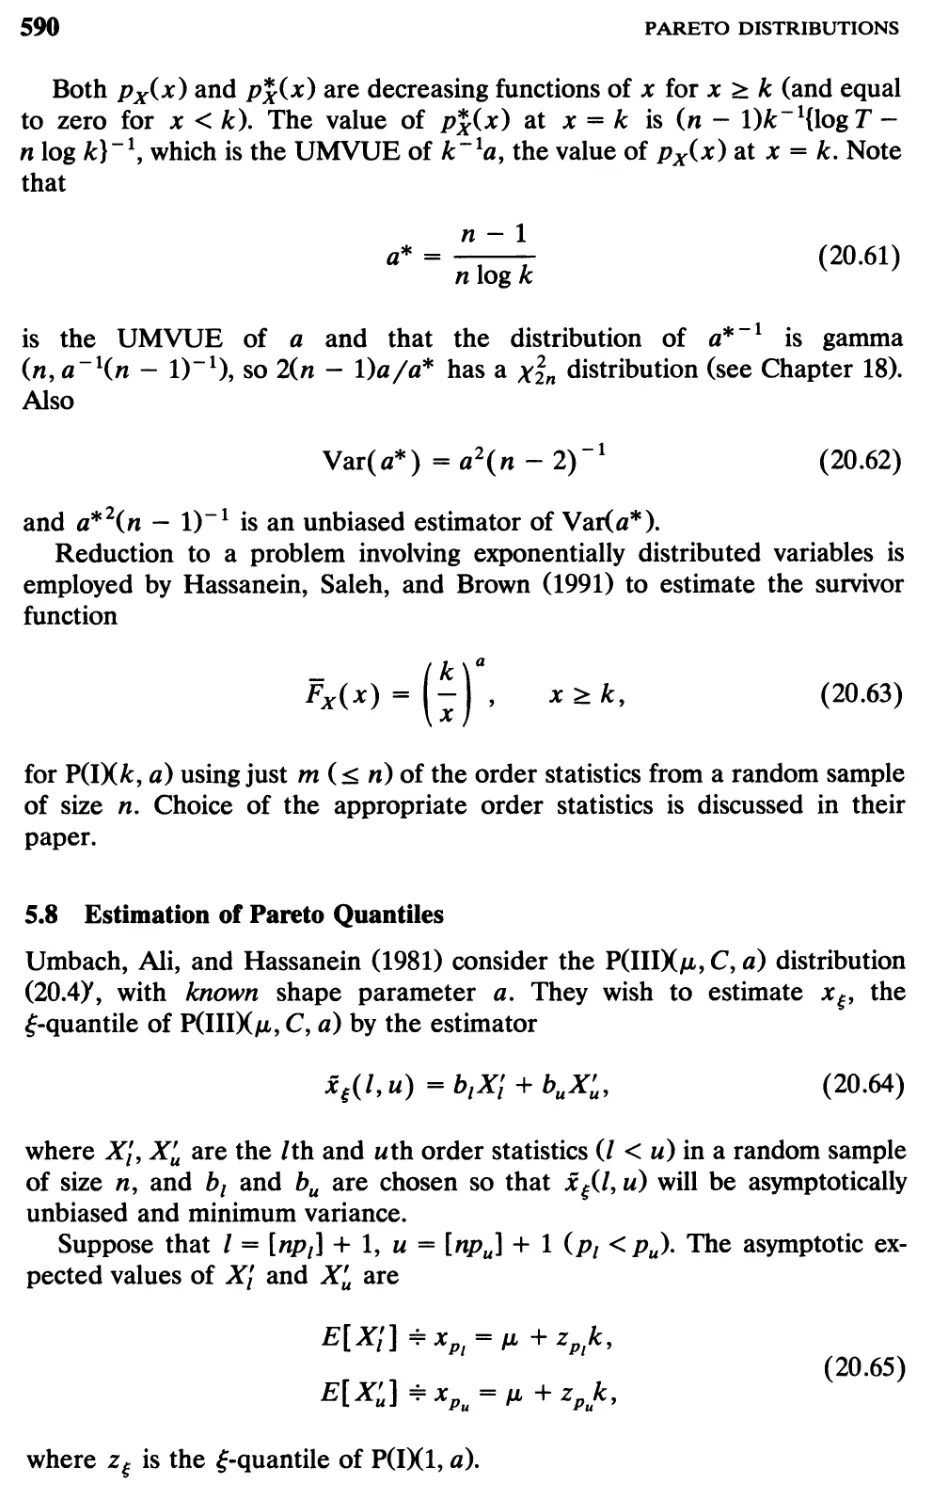 5.8 Estimation of Pareto Quantiles, 590